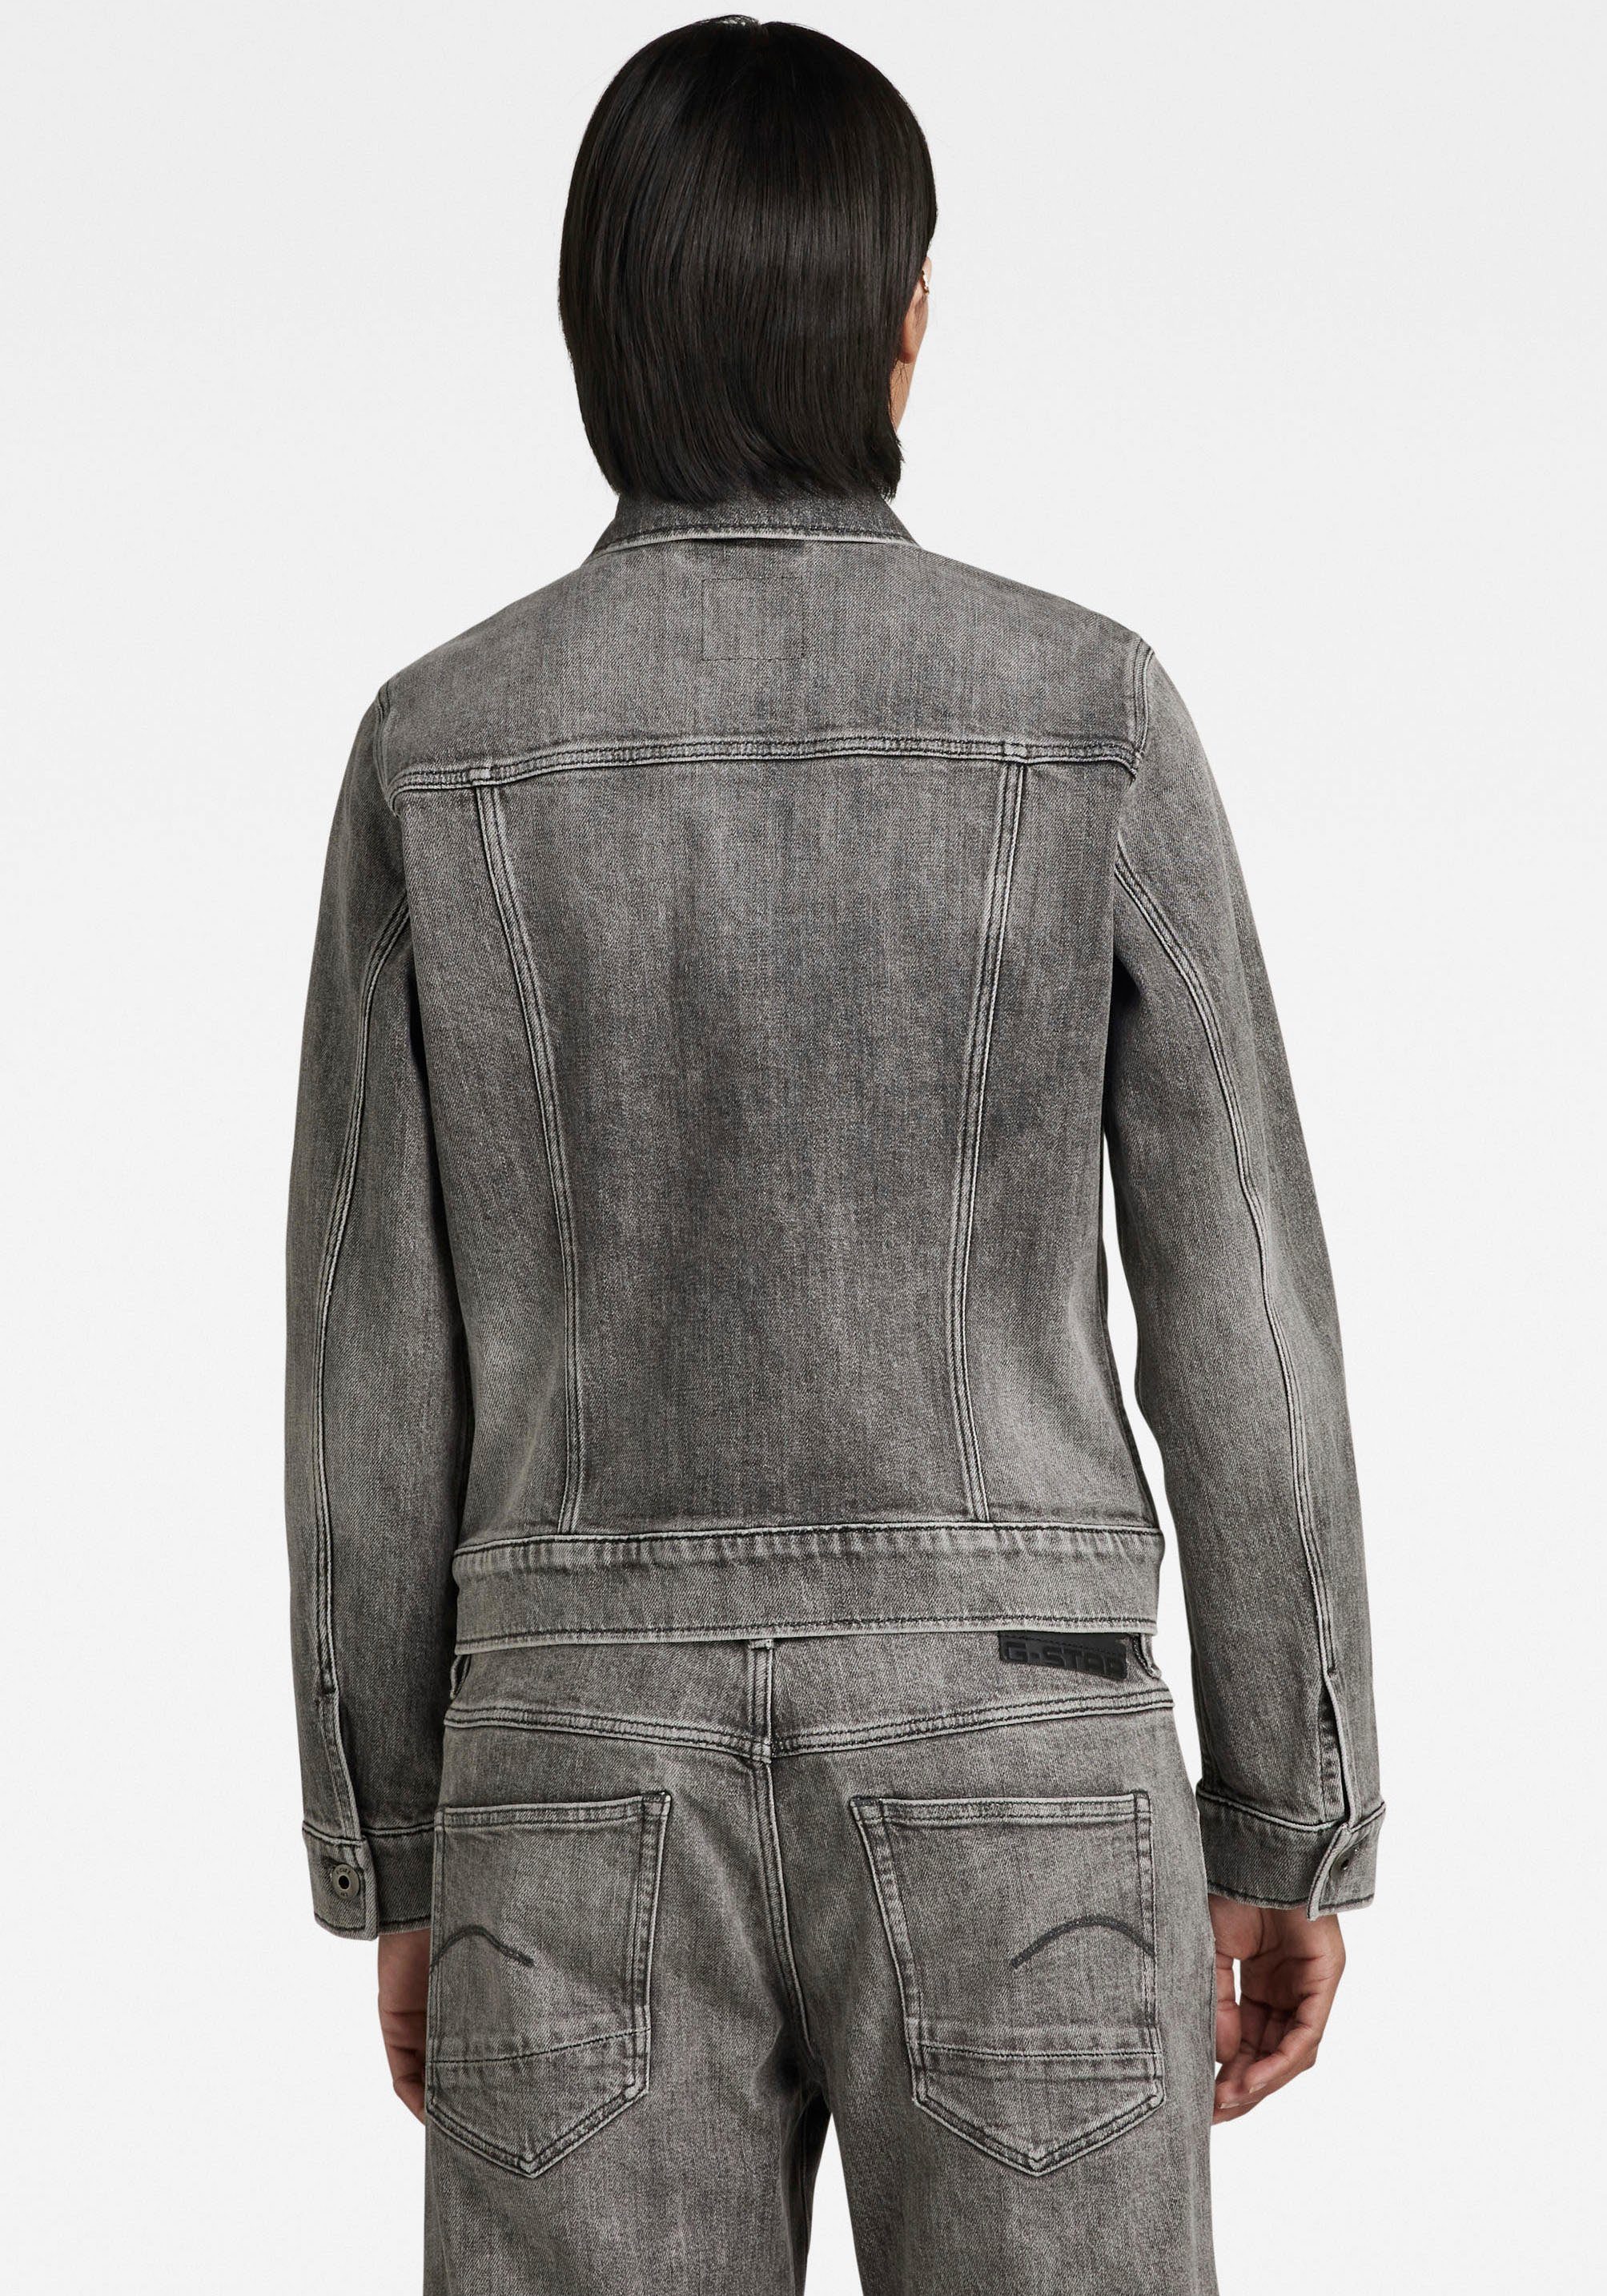 Pattentaschen carbon faded 3D RAW jacket Arc mit Jeansjacke mit Ösenknöpfen G-Star aufgesetzten